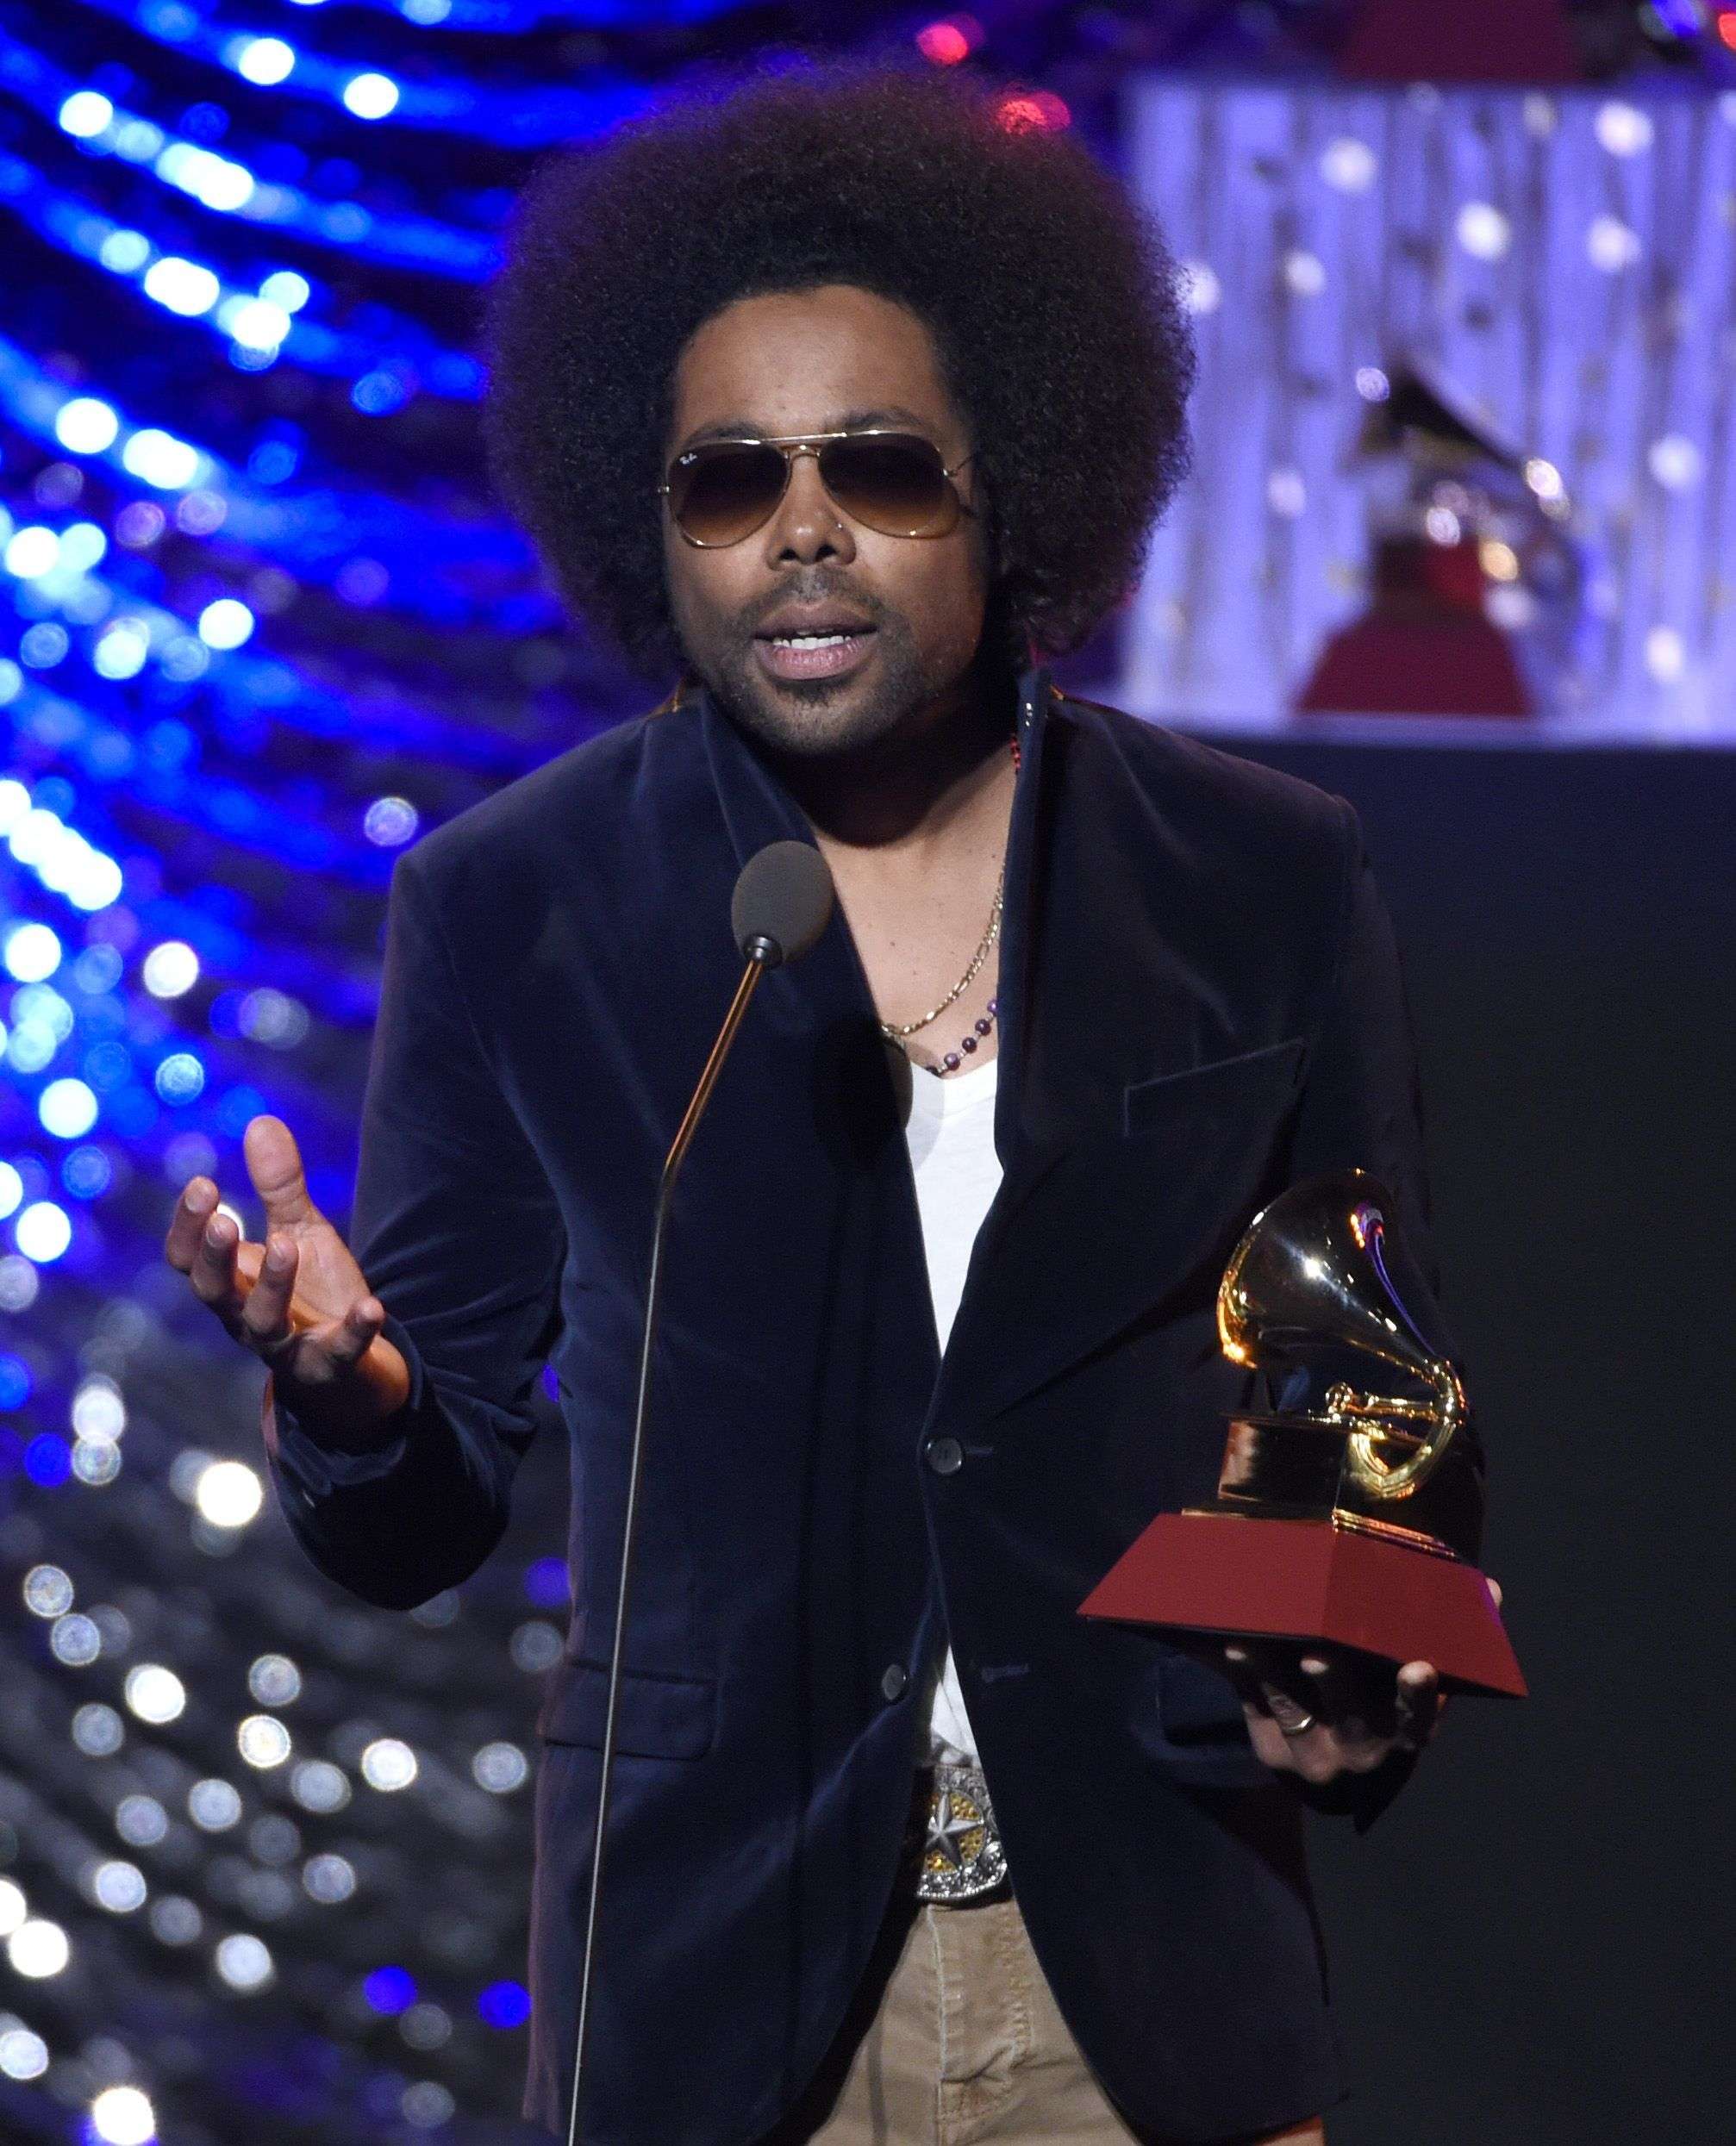 Alex Cuba recibe el premio al mejor álbum cantautor por "Healer" en la 16a entrega de los Latin Grammy el jueves 19 de noviembre de 2015 en Las Vegas. Foto: Chris Pizzello/Invision/AP